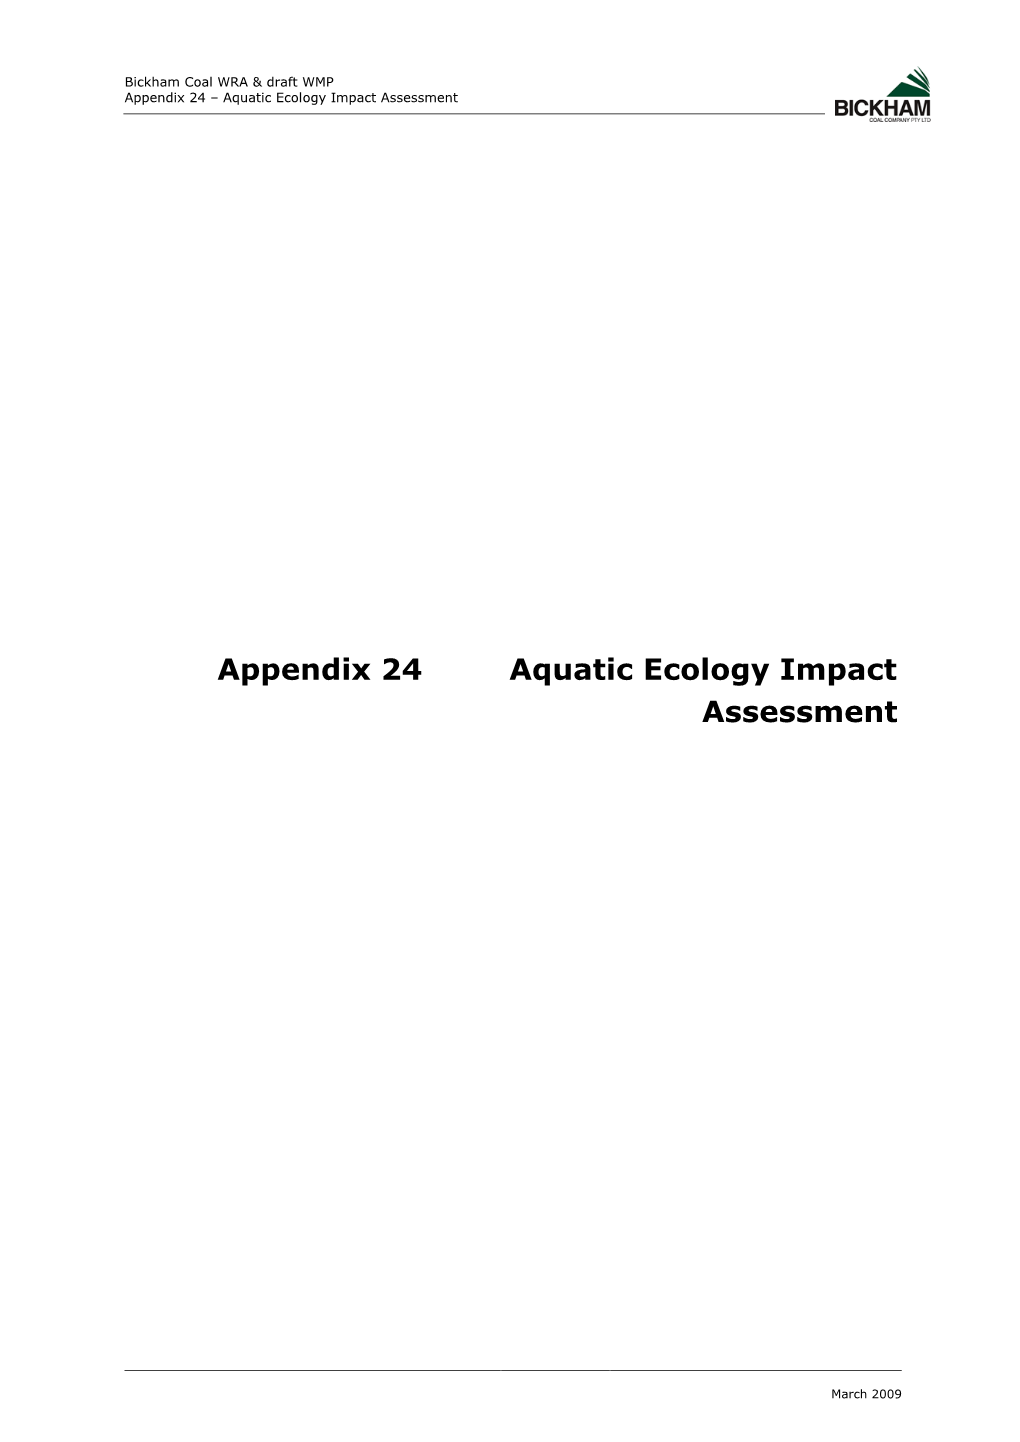 Appendix 24 Aquatic Ecology Impact Assessment